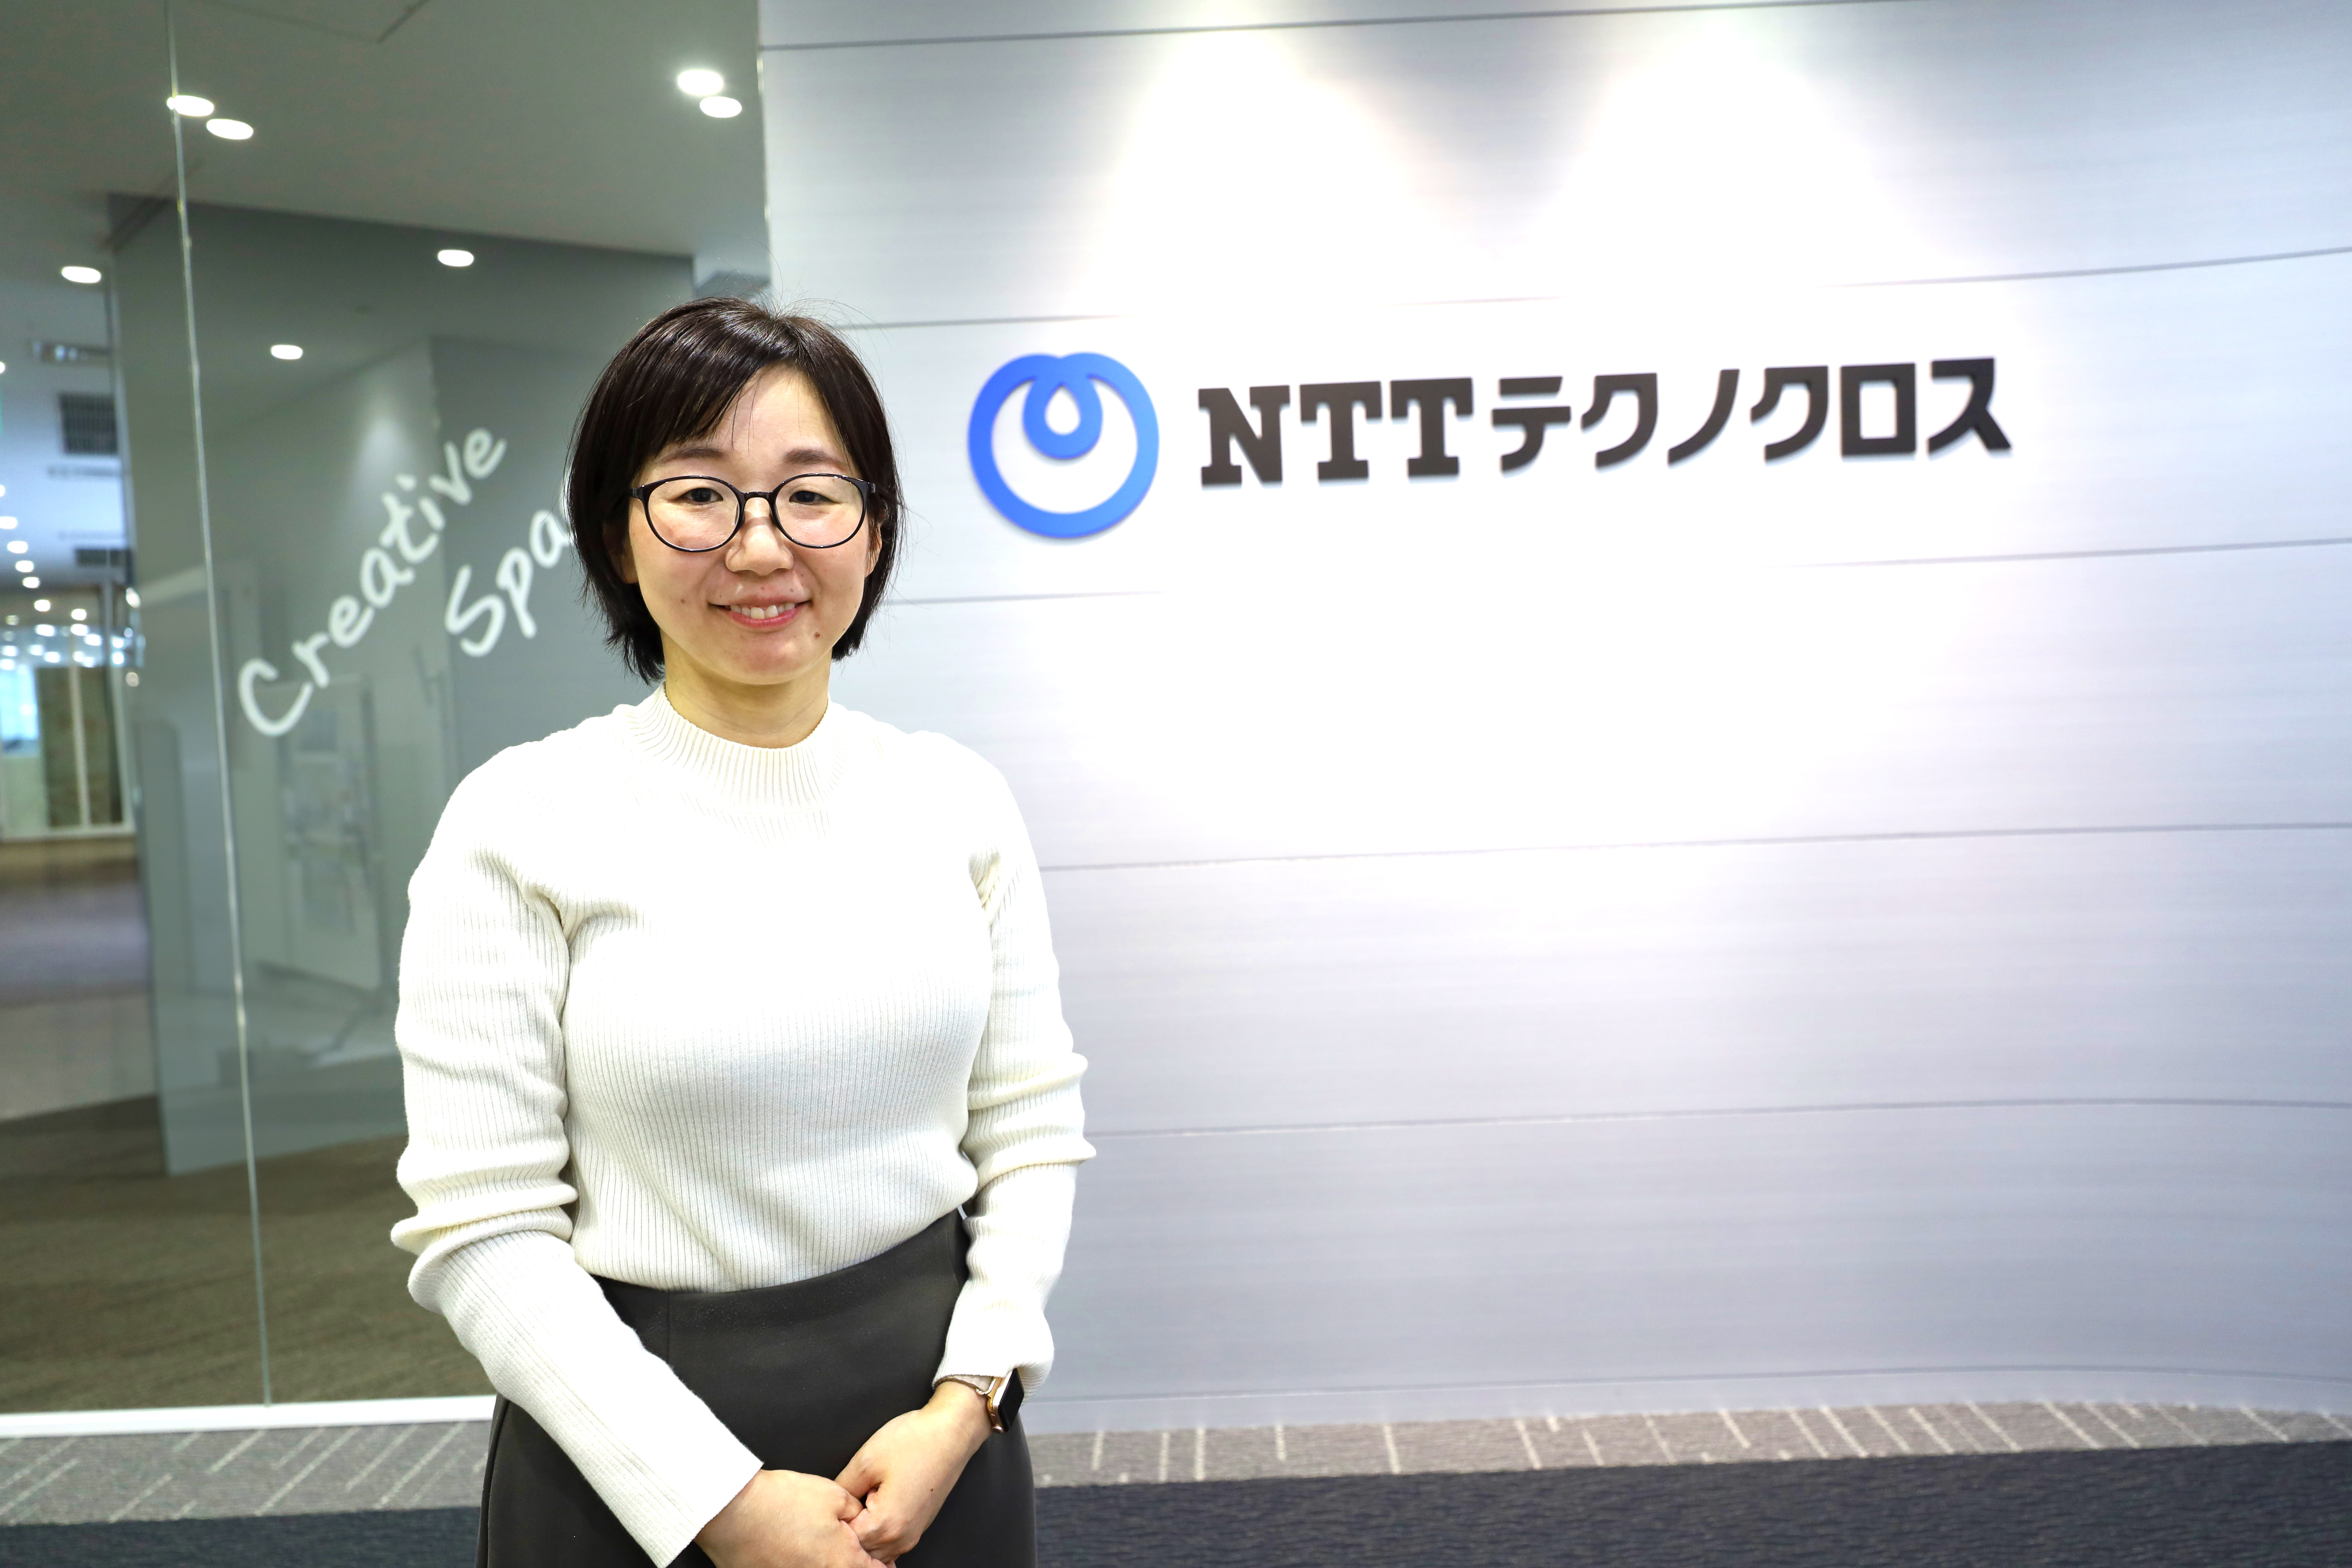 NTTテクノクロスが目指す誰もが働きやすい職場とは。～聴覚障がい者との相互理解を図る「ツナガル・ブックTM」発行への想い～